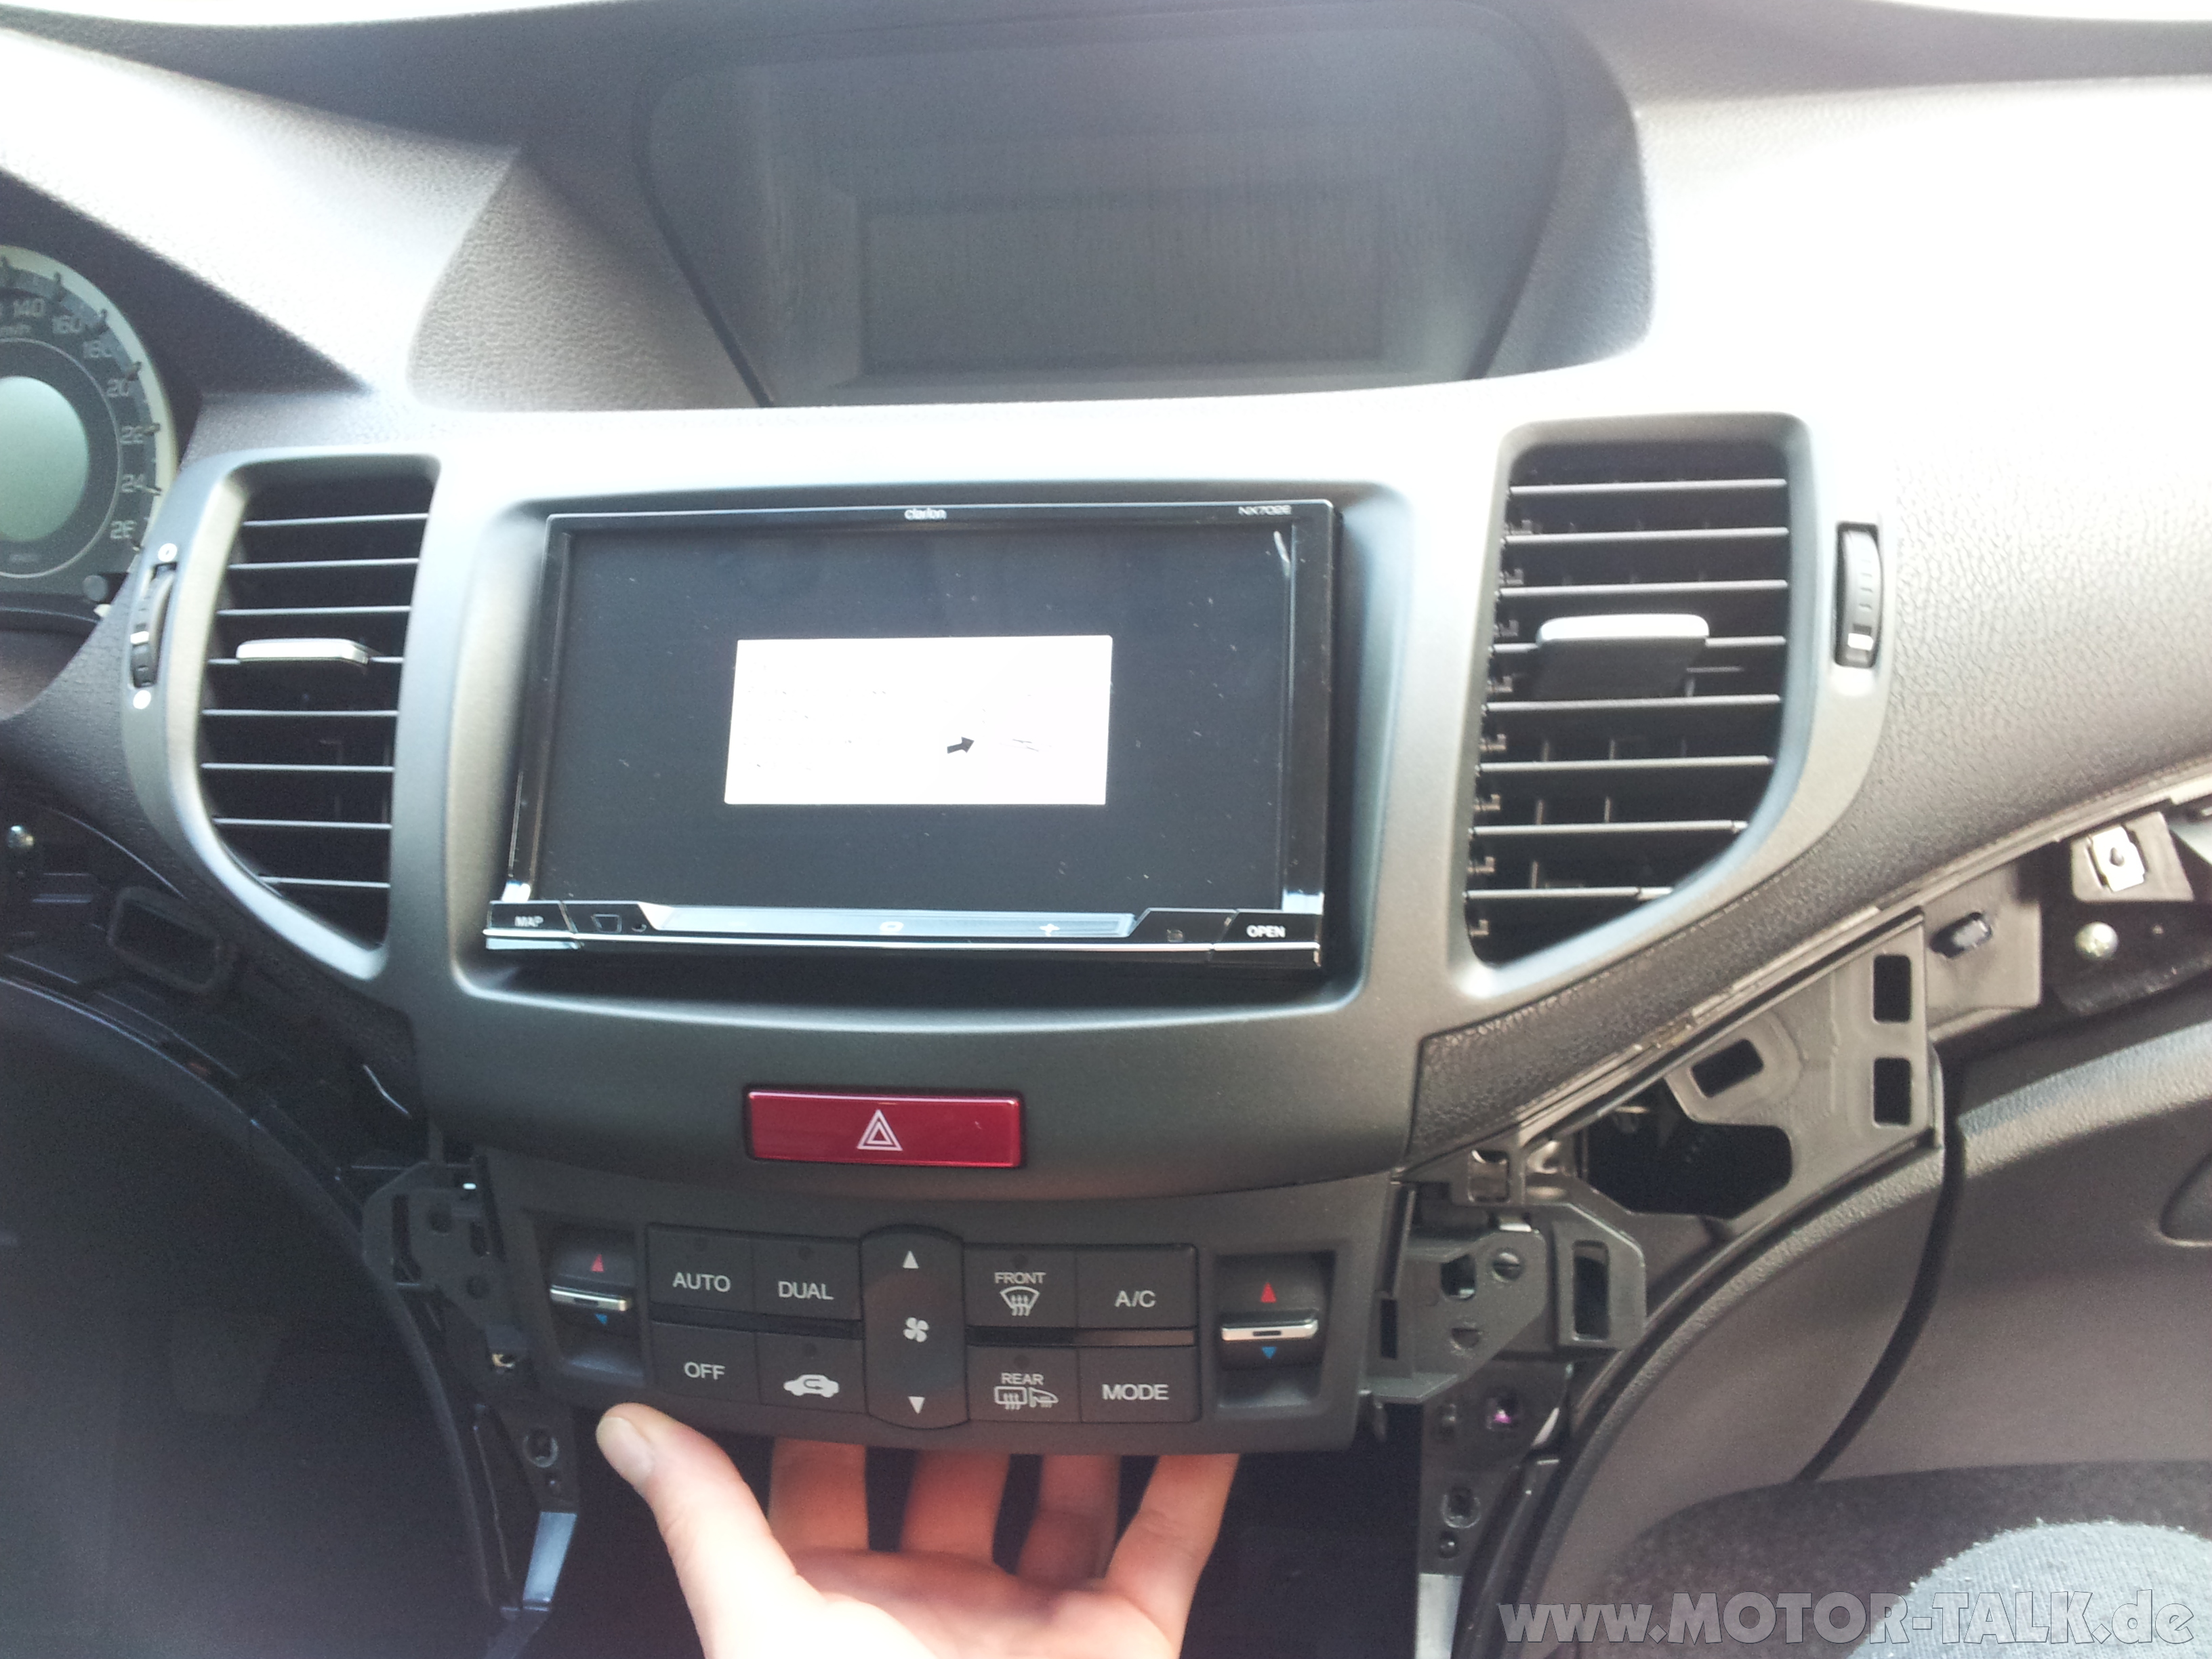 2008 Honda accord premium audio system #6